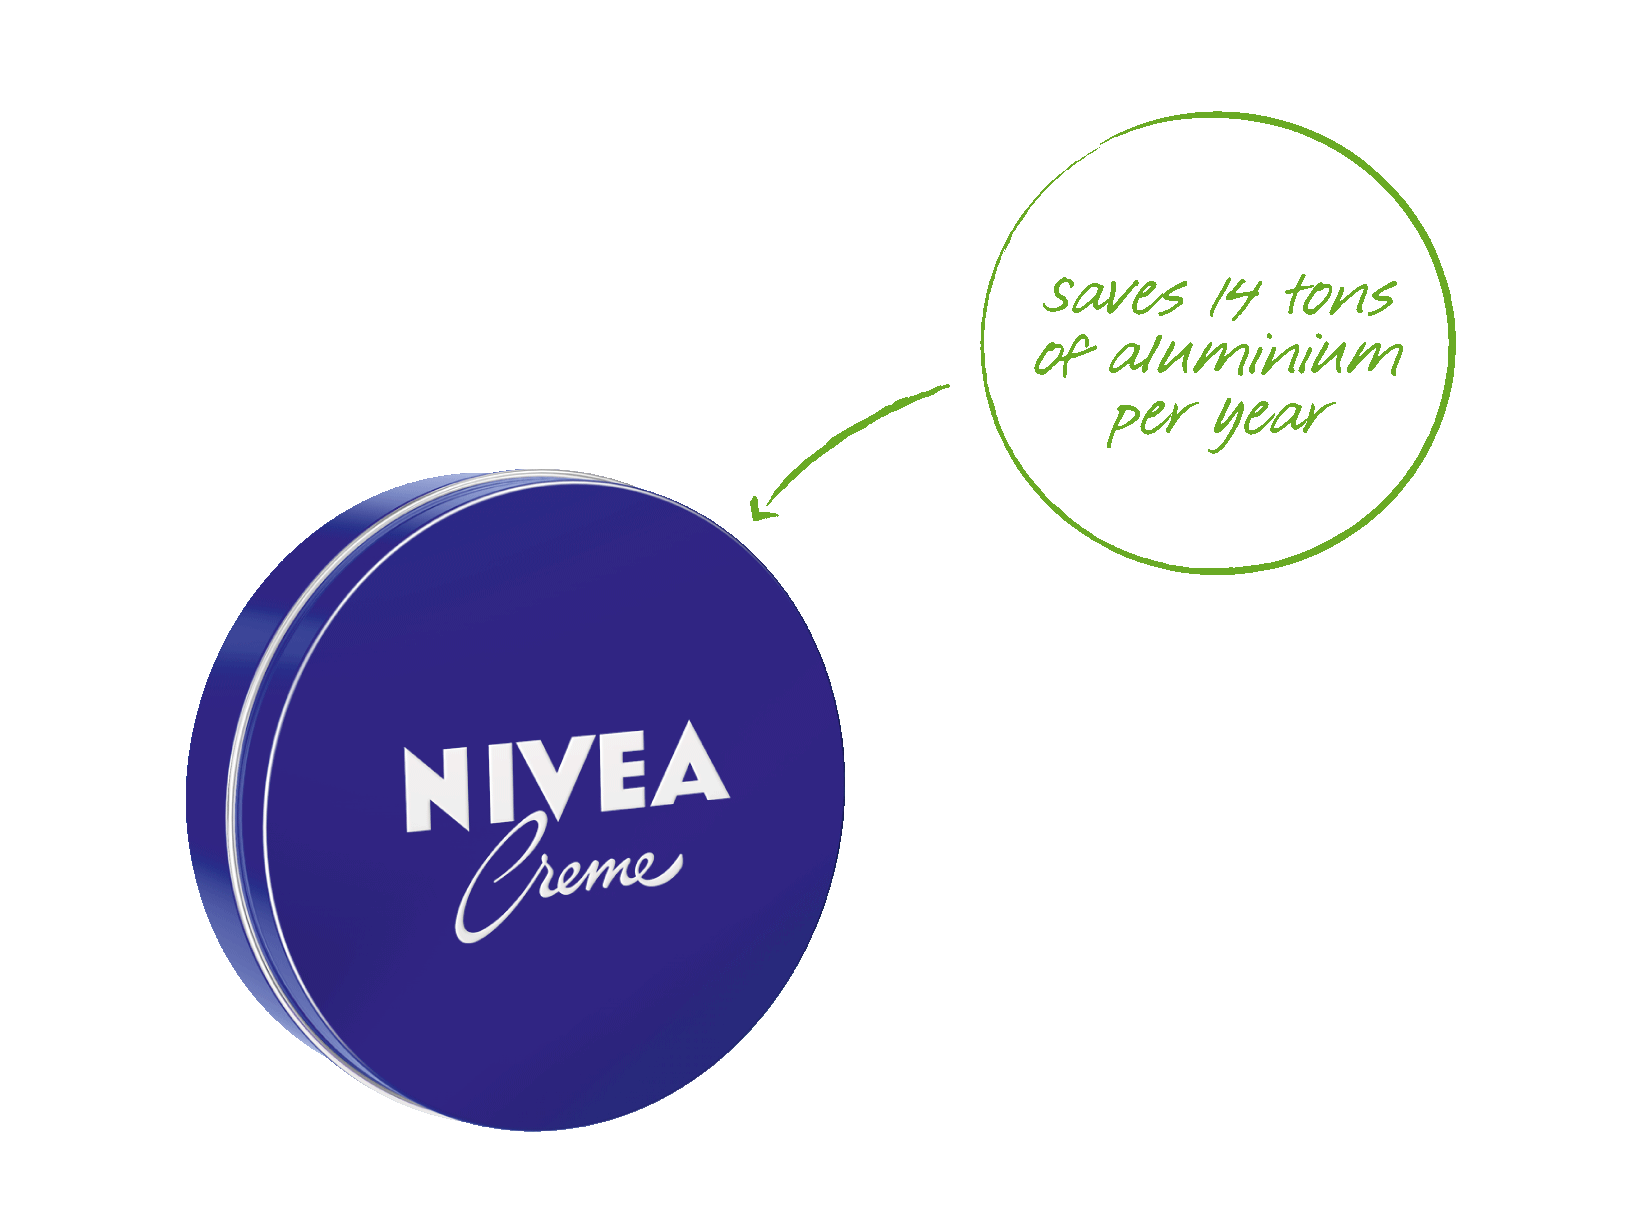 nivea-aluminium-savings